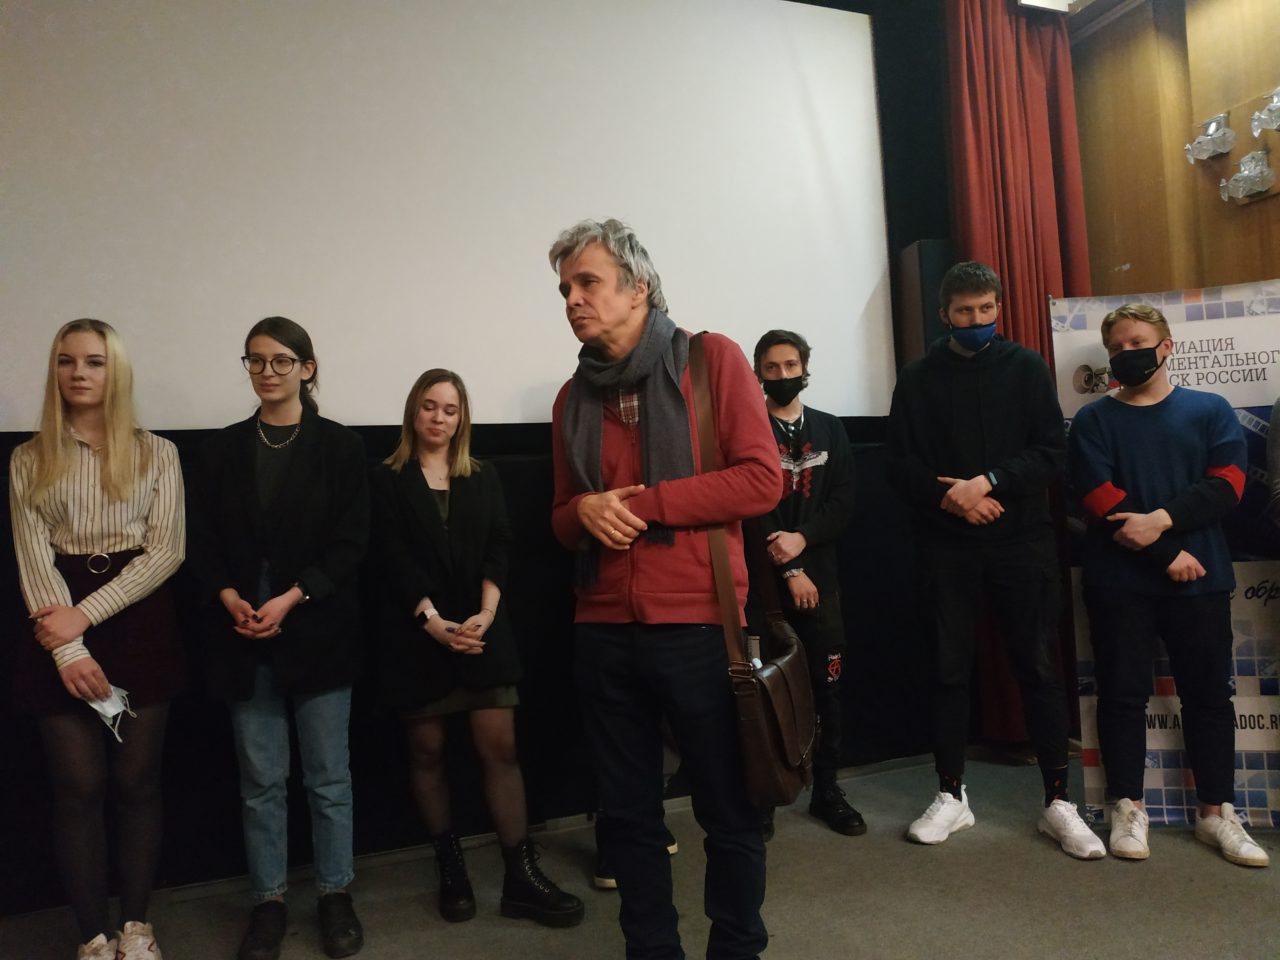 Ассоциация документального кино провела  показ студенческих работ режиссерской мастерской Андрея Железнякова